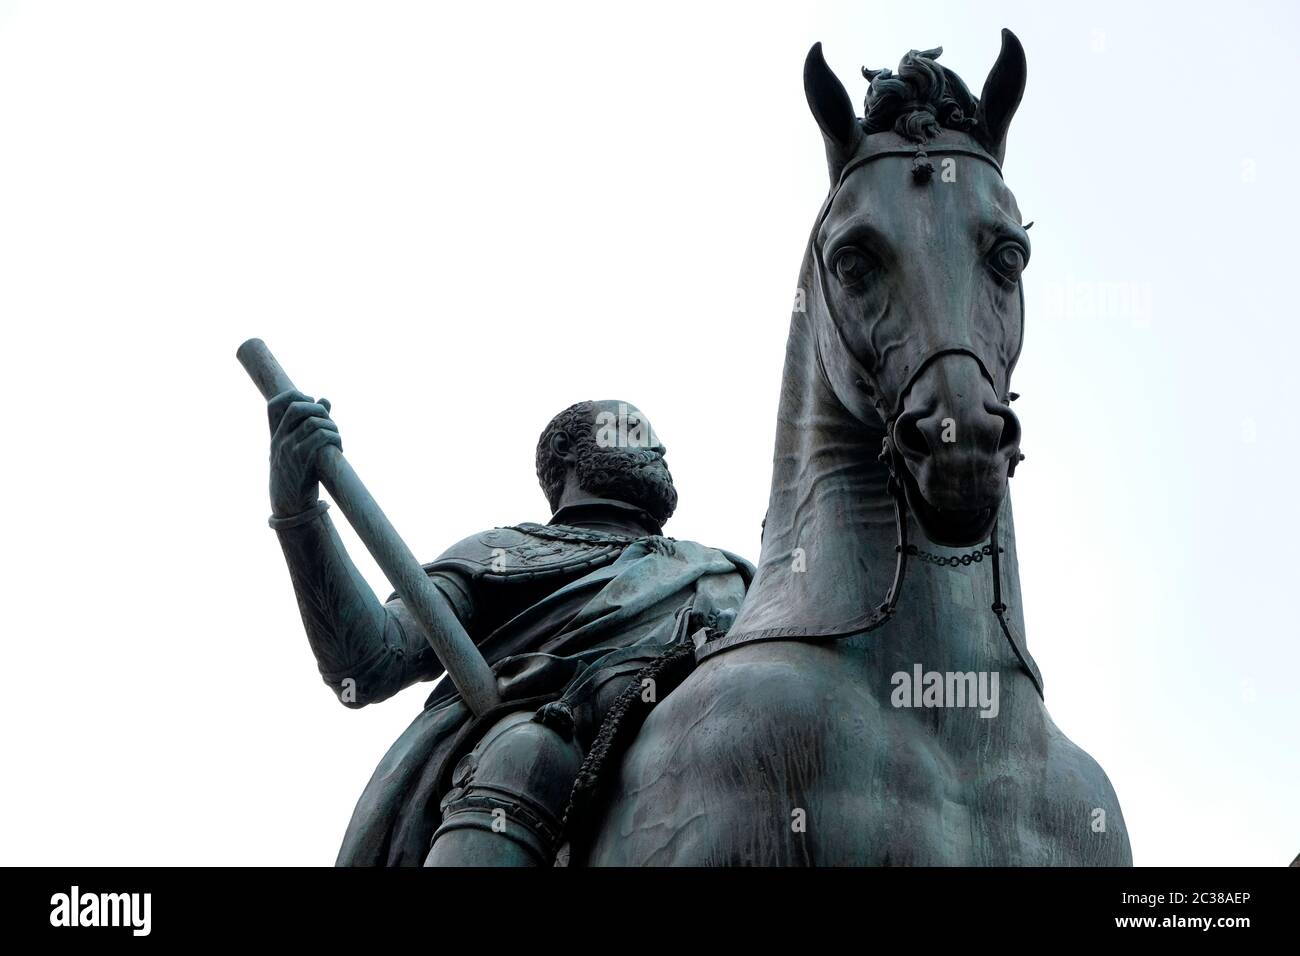 Equestrian statue of Cosimo de Medici, Cosimo I, Piazza della Signoria, Florence, Italy. Stock Photo